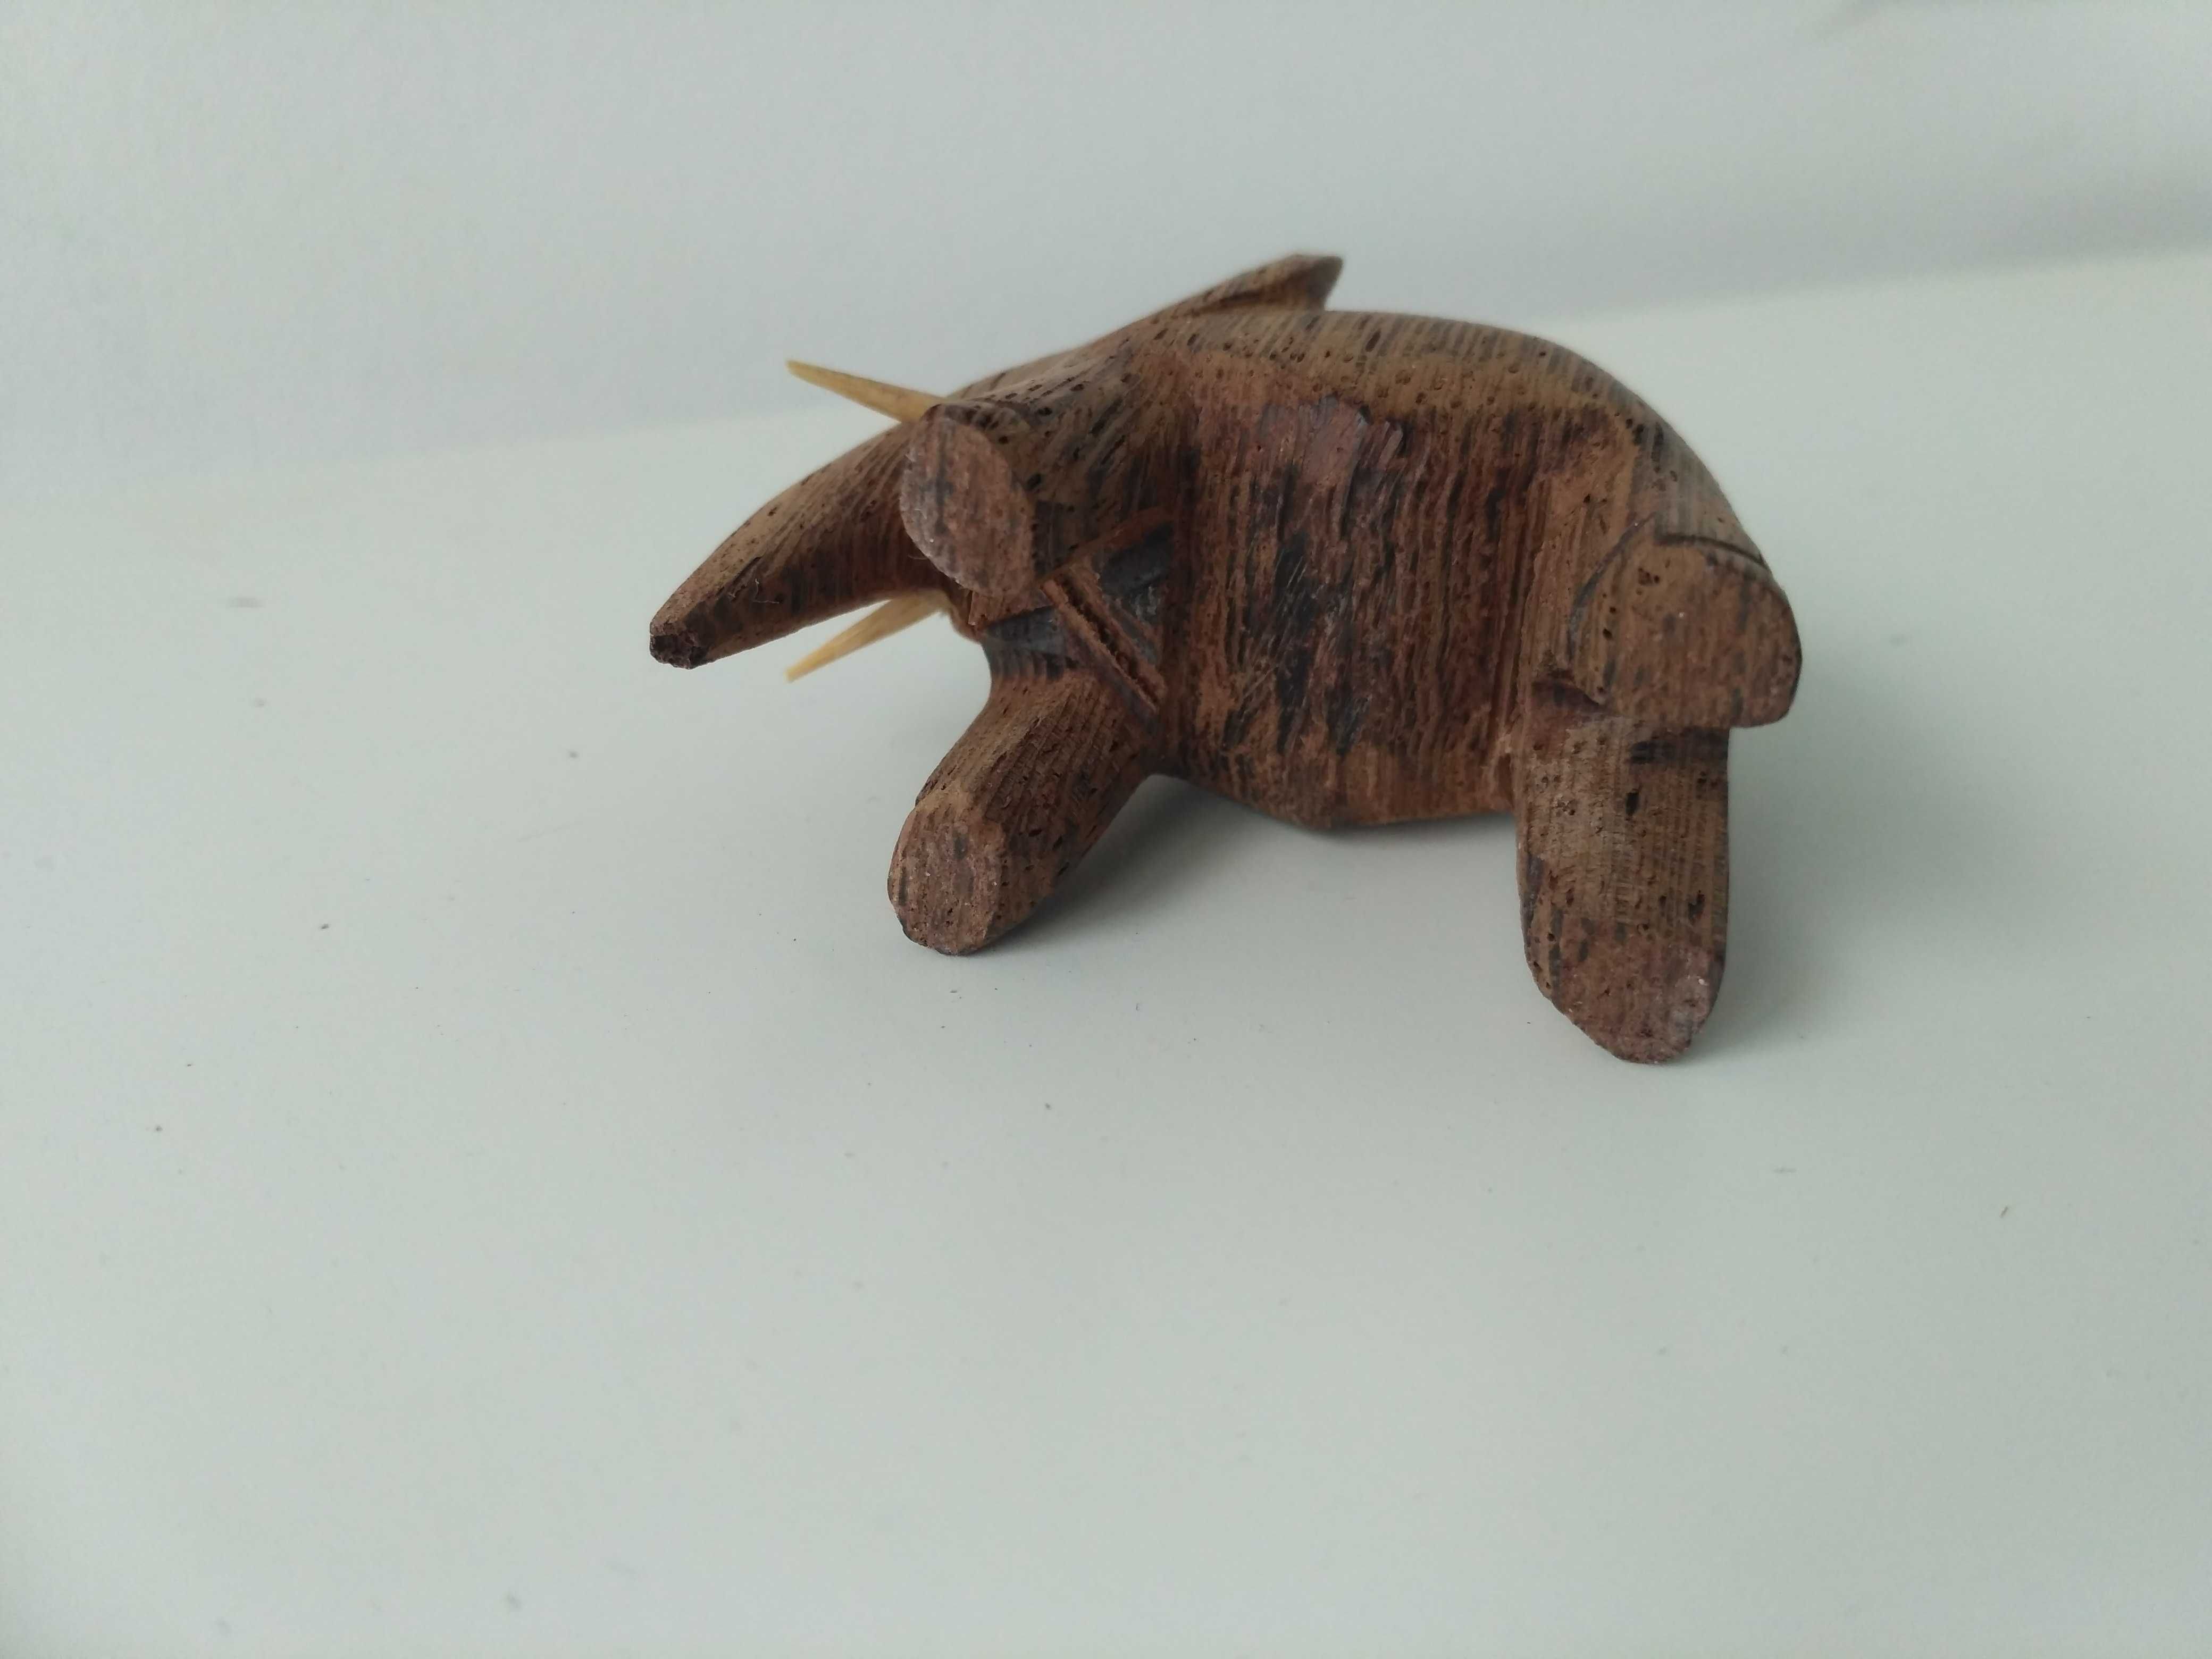 Mały drewniany słoń stojący - wysokość 4,5 cm